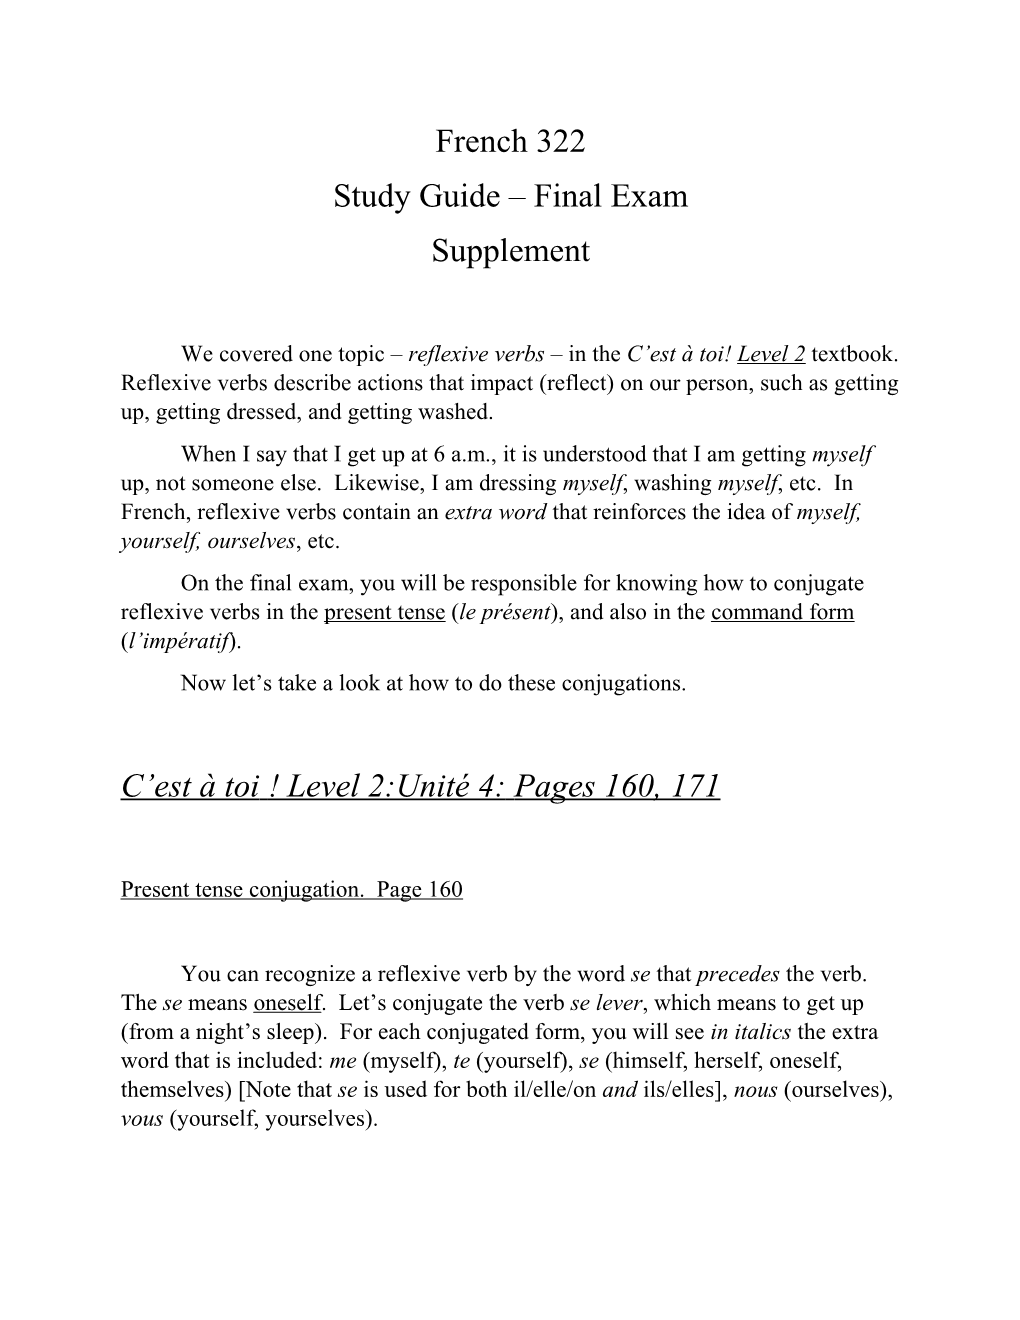 Study Guide Final Exam s1